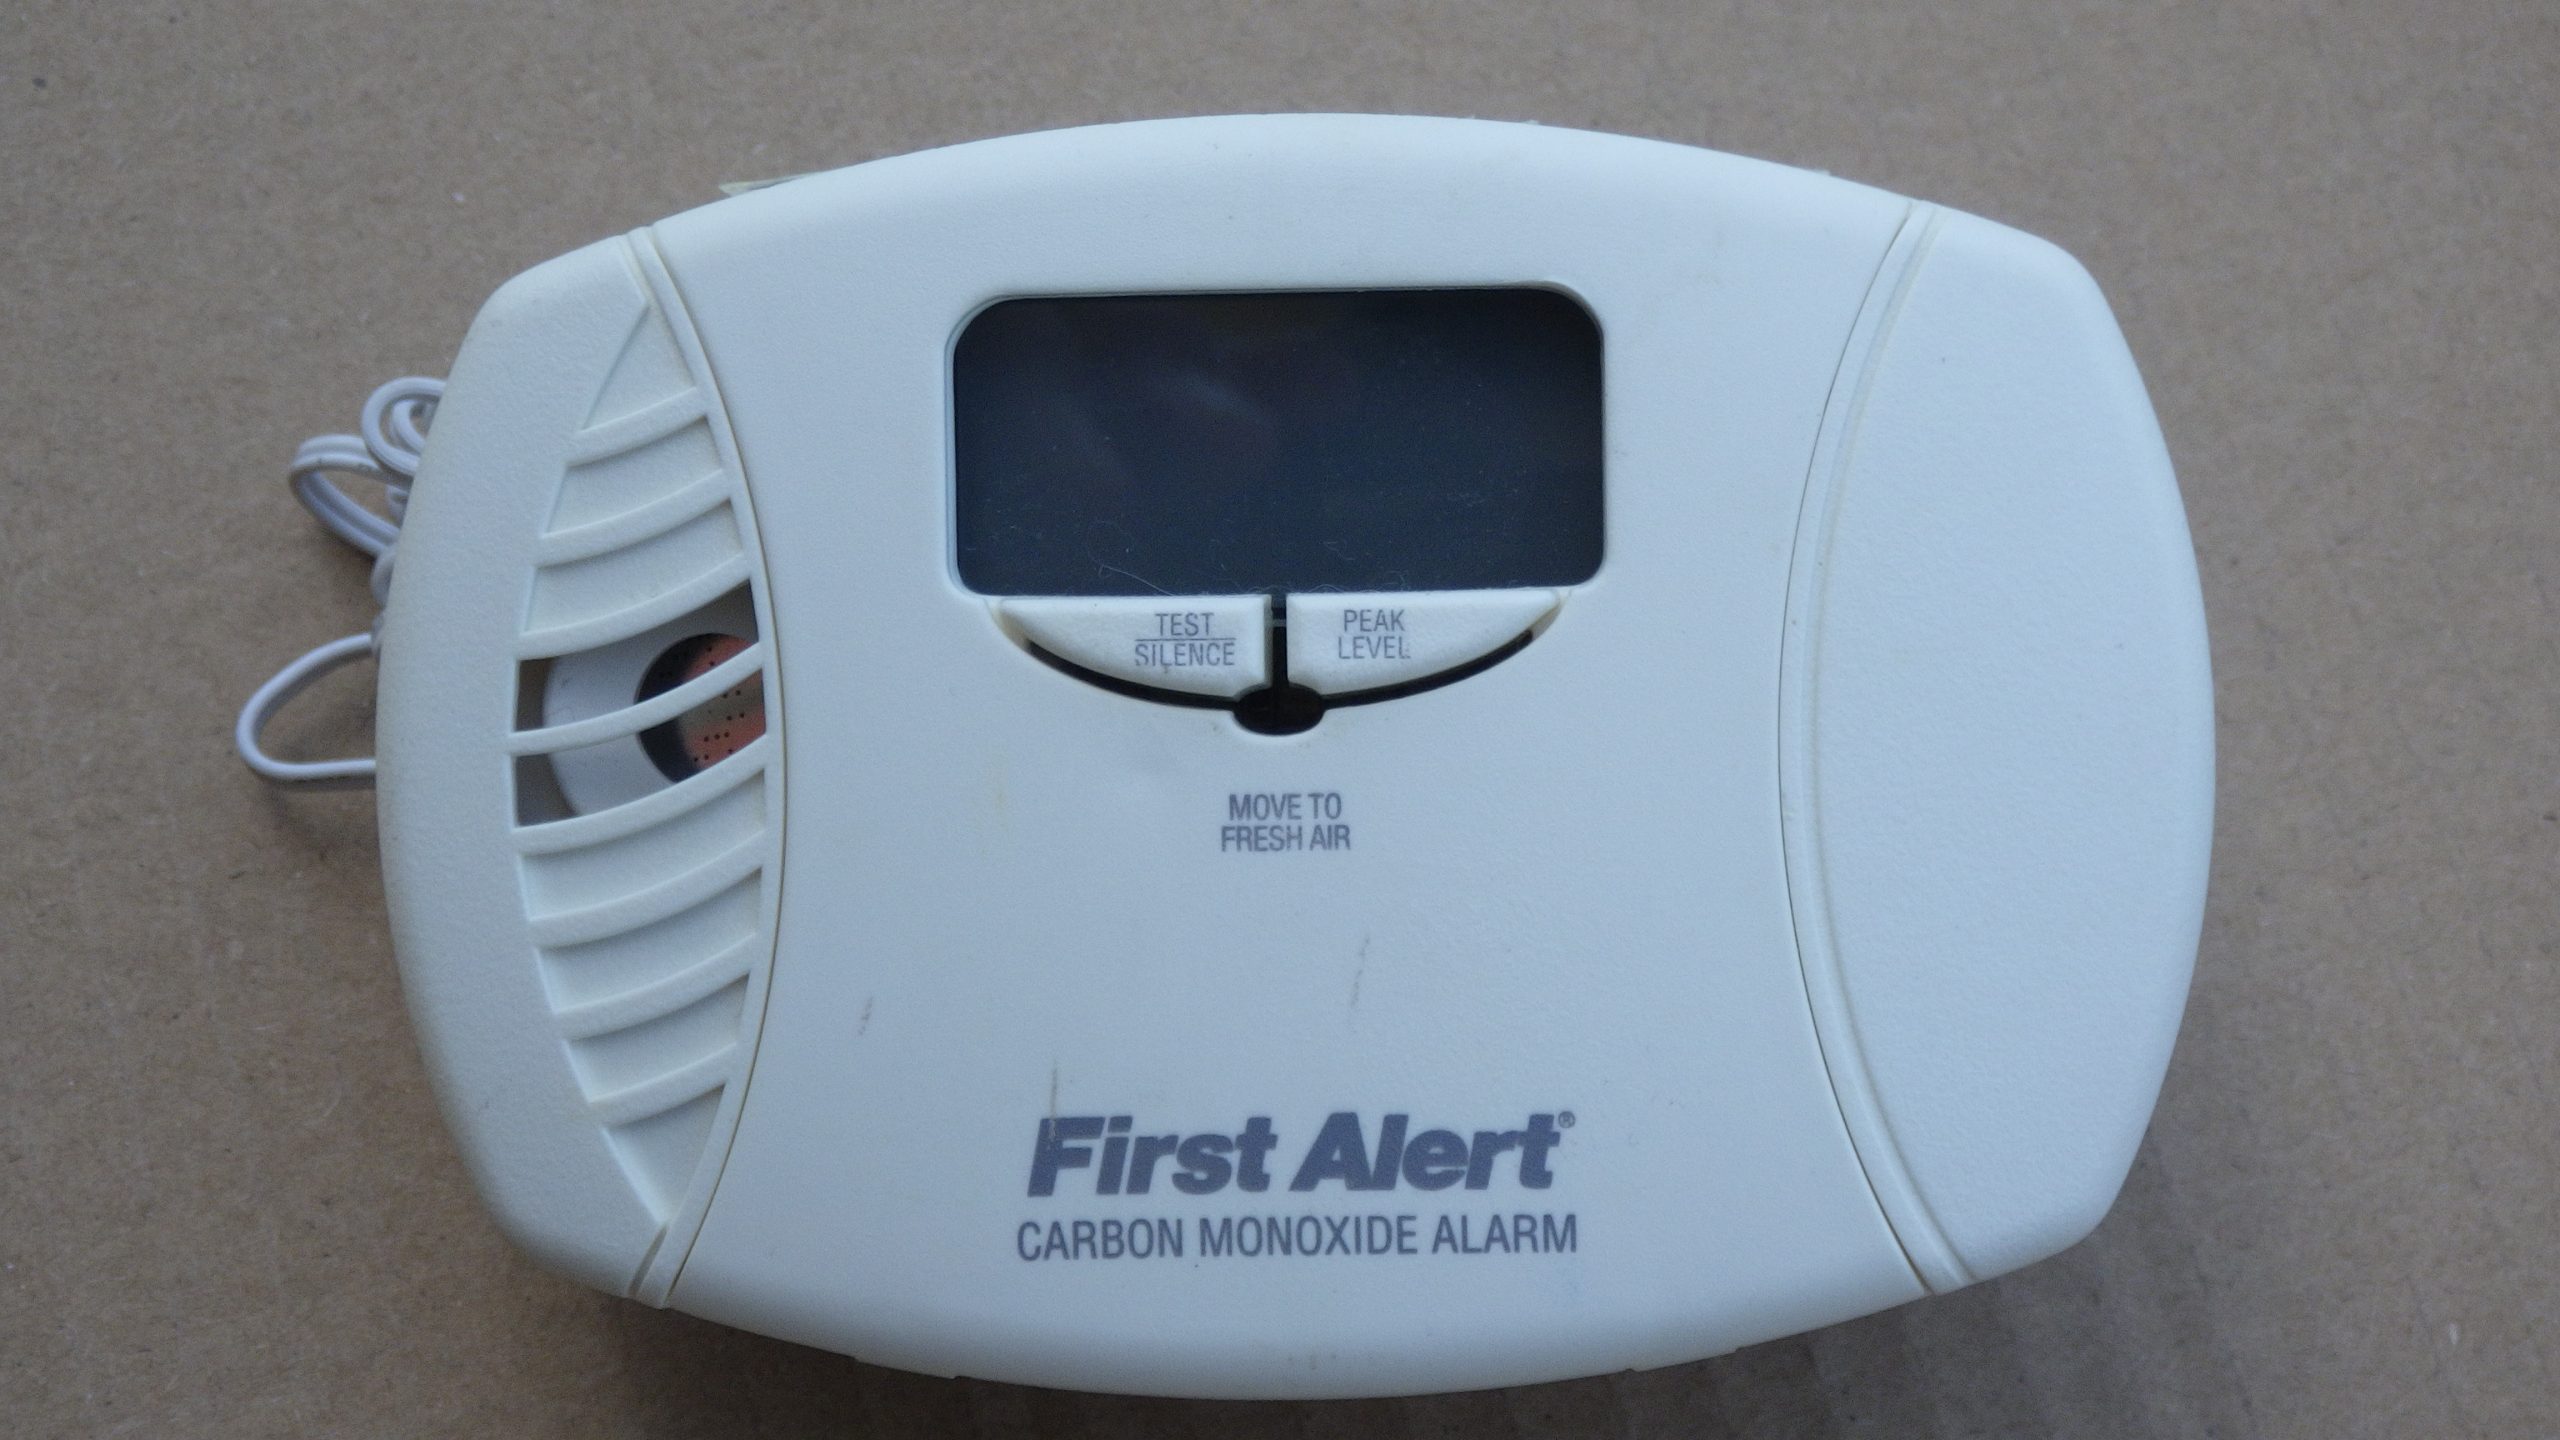 Carbon Monoxide Incident Review